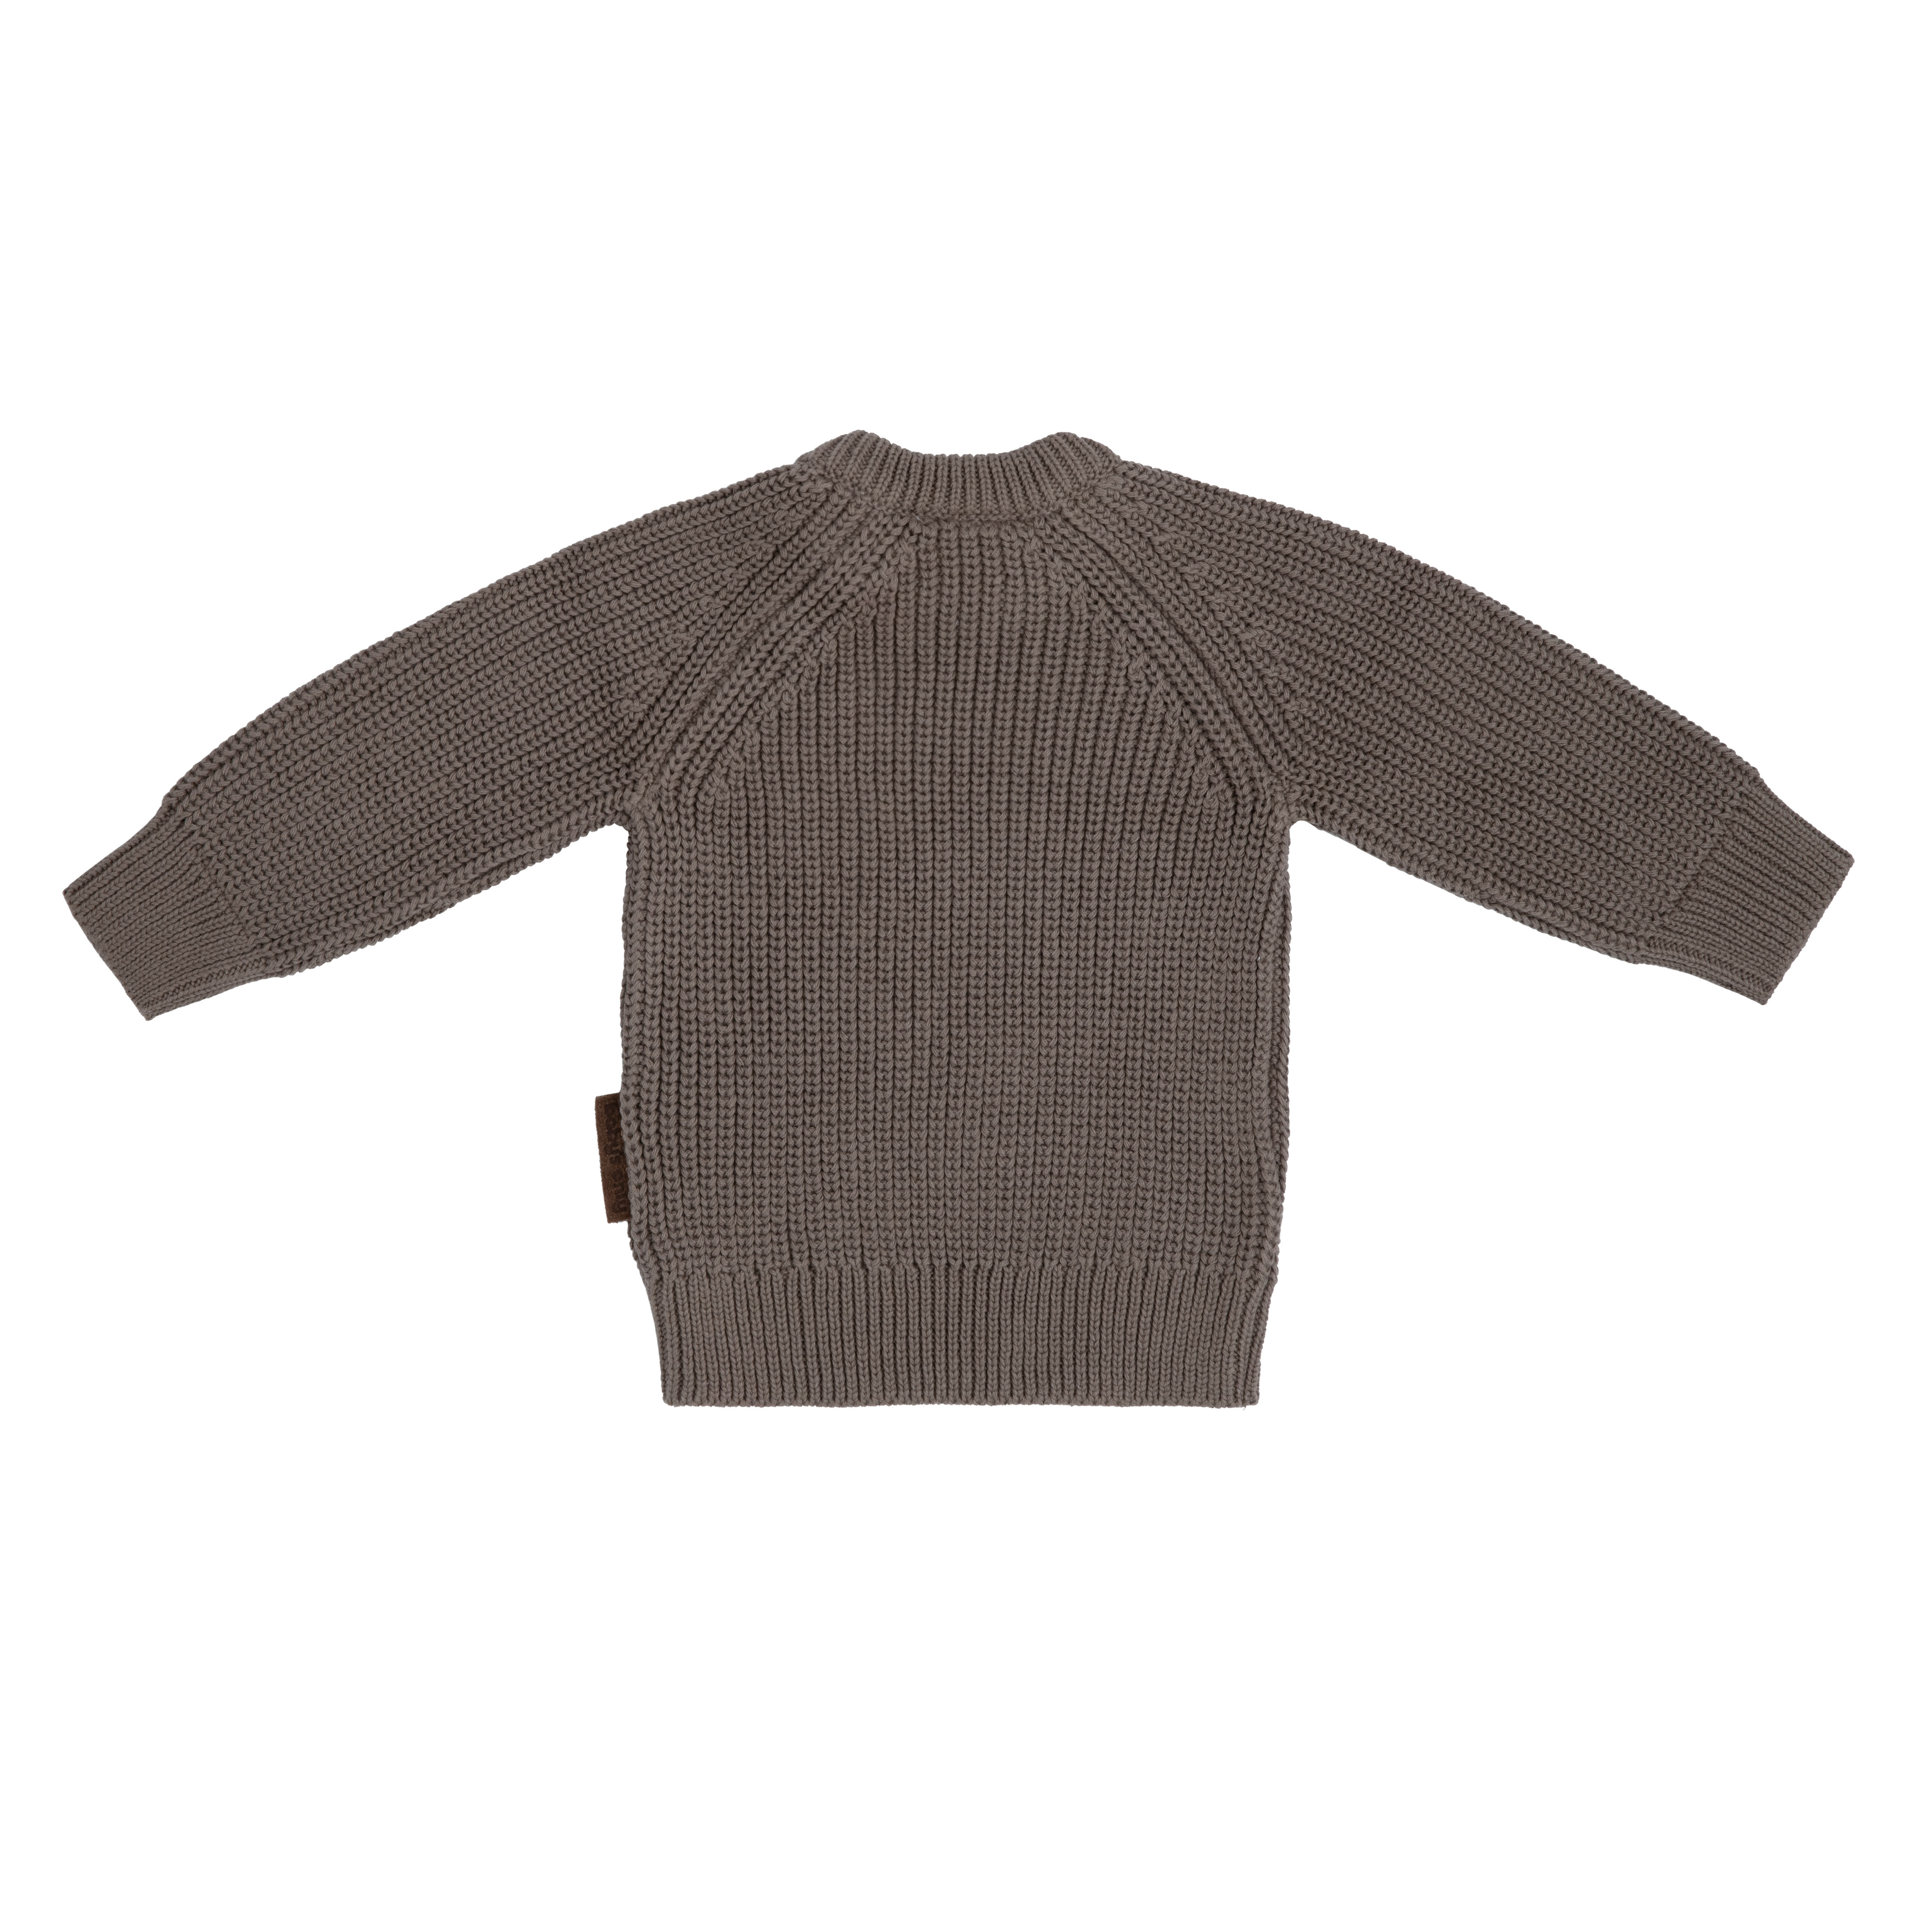 Sweater Soul mocha  - 56